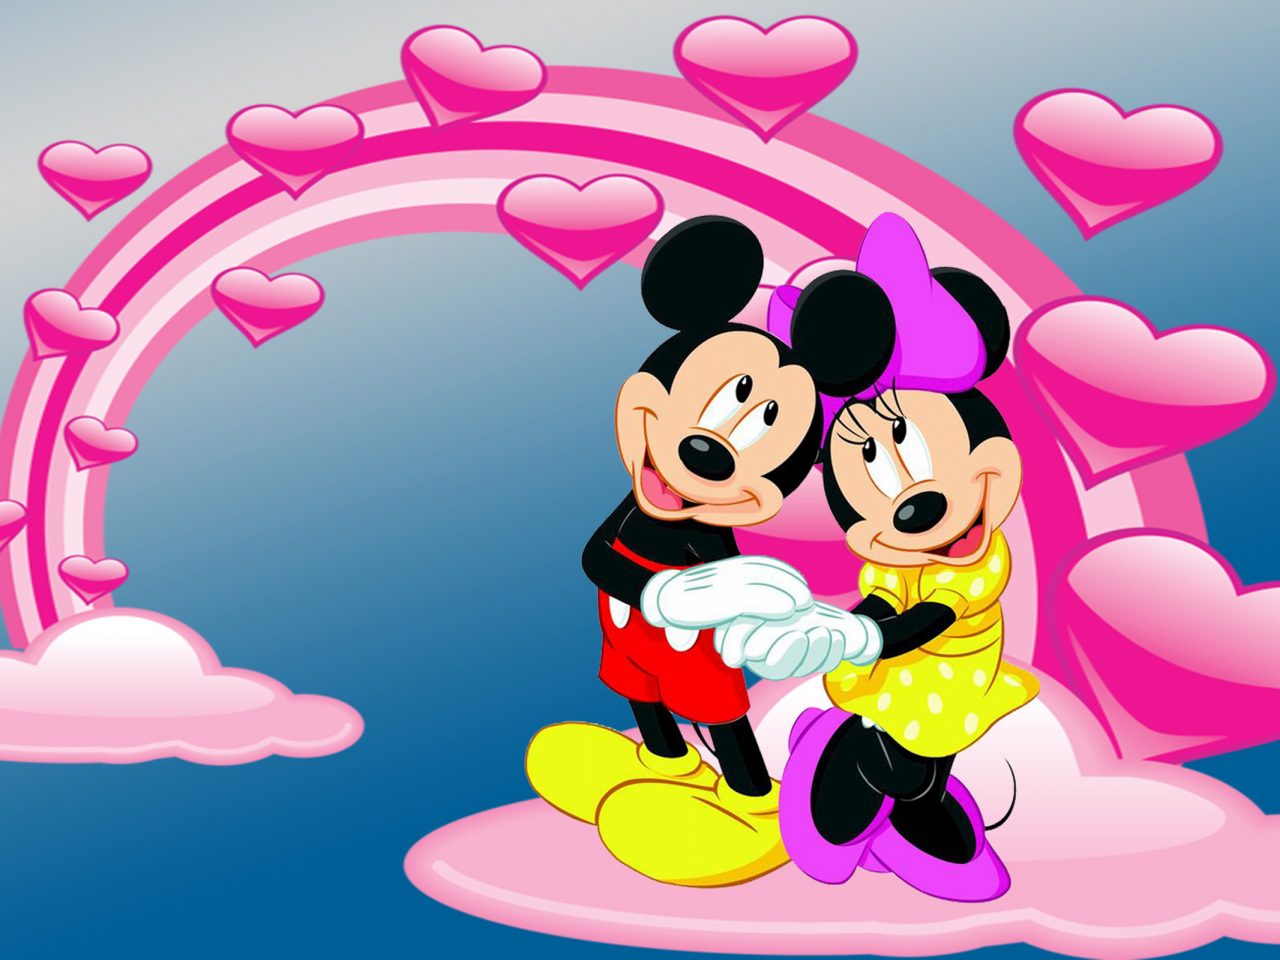 ミッキーとミニーマウスの壁紙無料,漫画,アニメ,愛,心臓,図